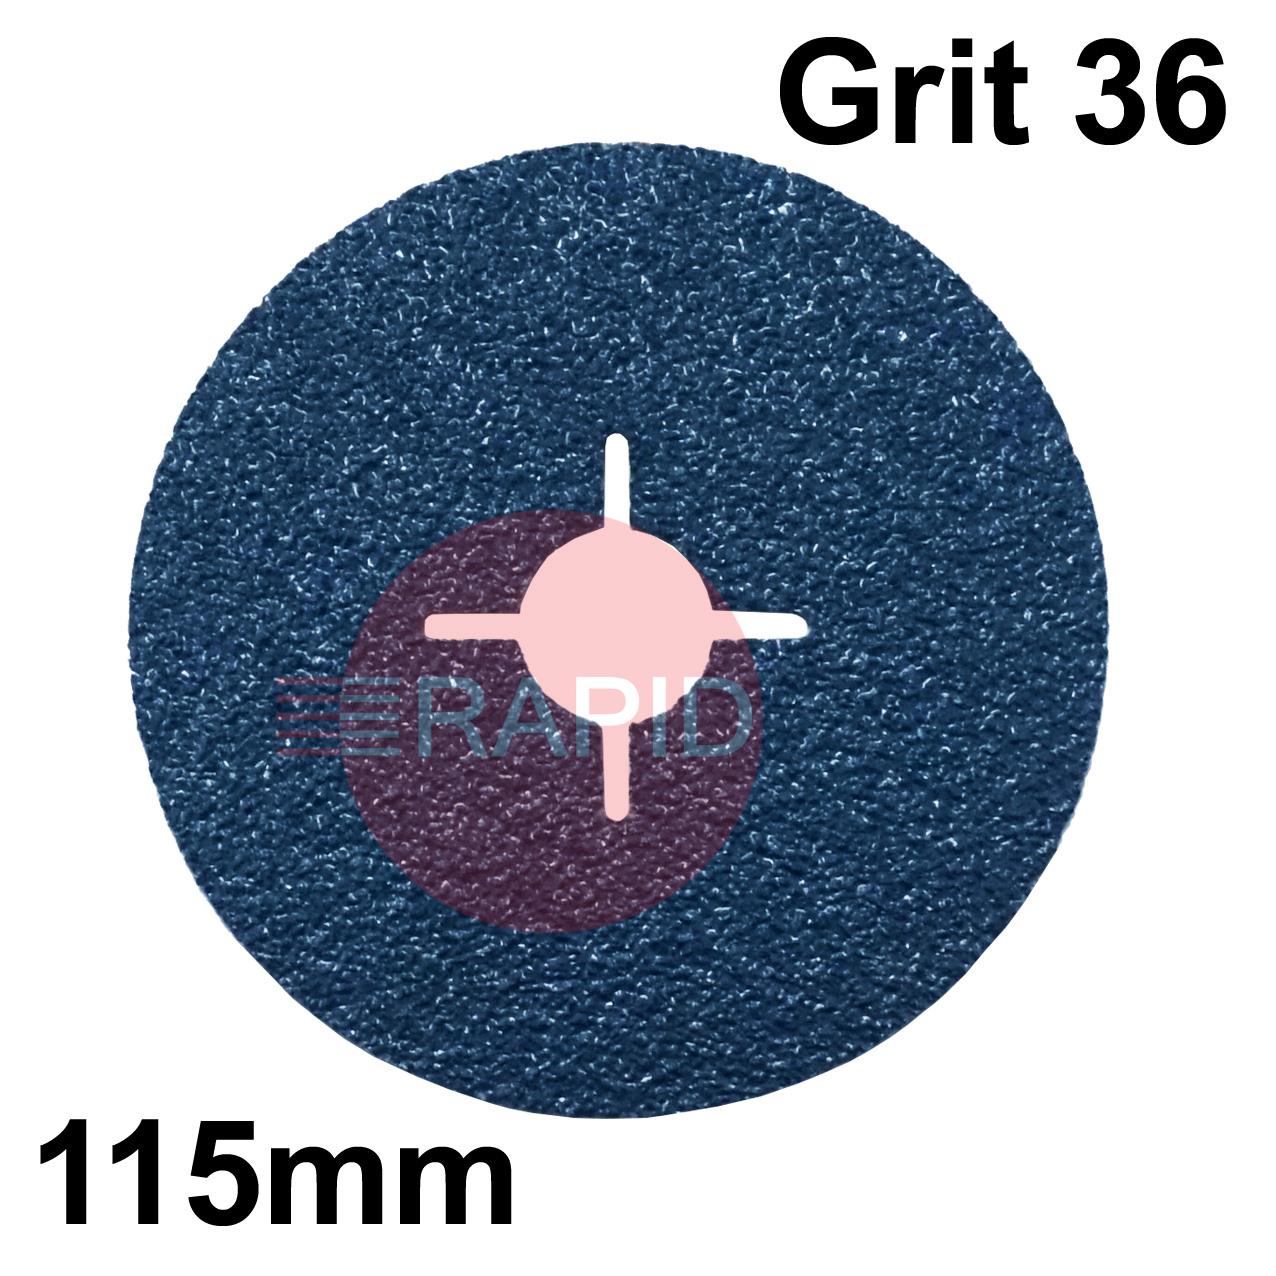 077930  SAITDISC-D 115mm (4.5) Zirconium Fibre Sanding Disc - Grit 36